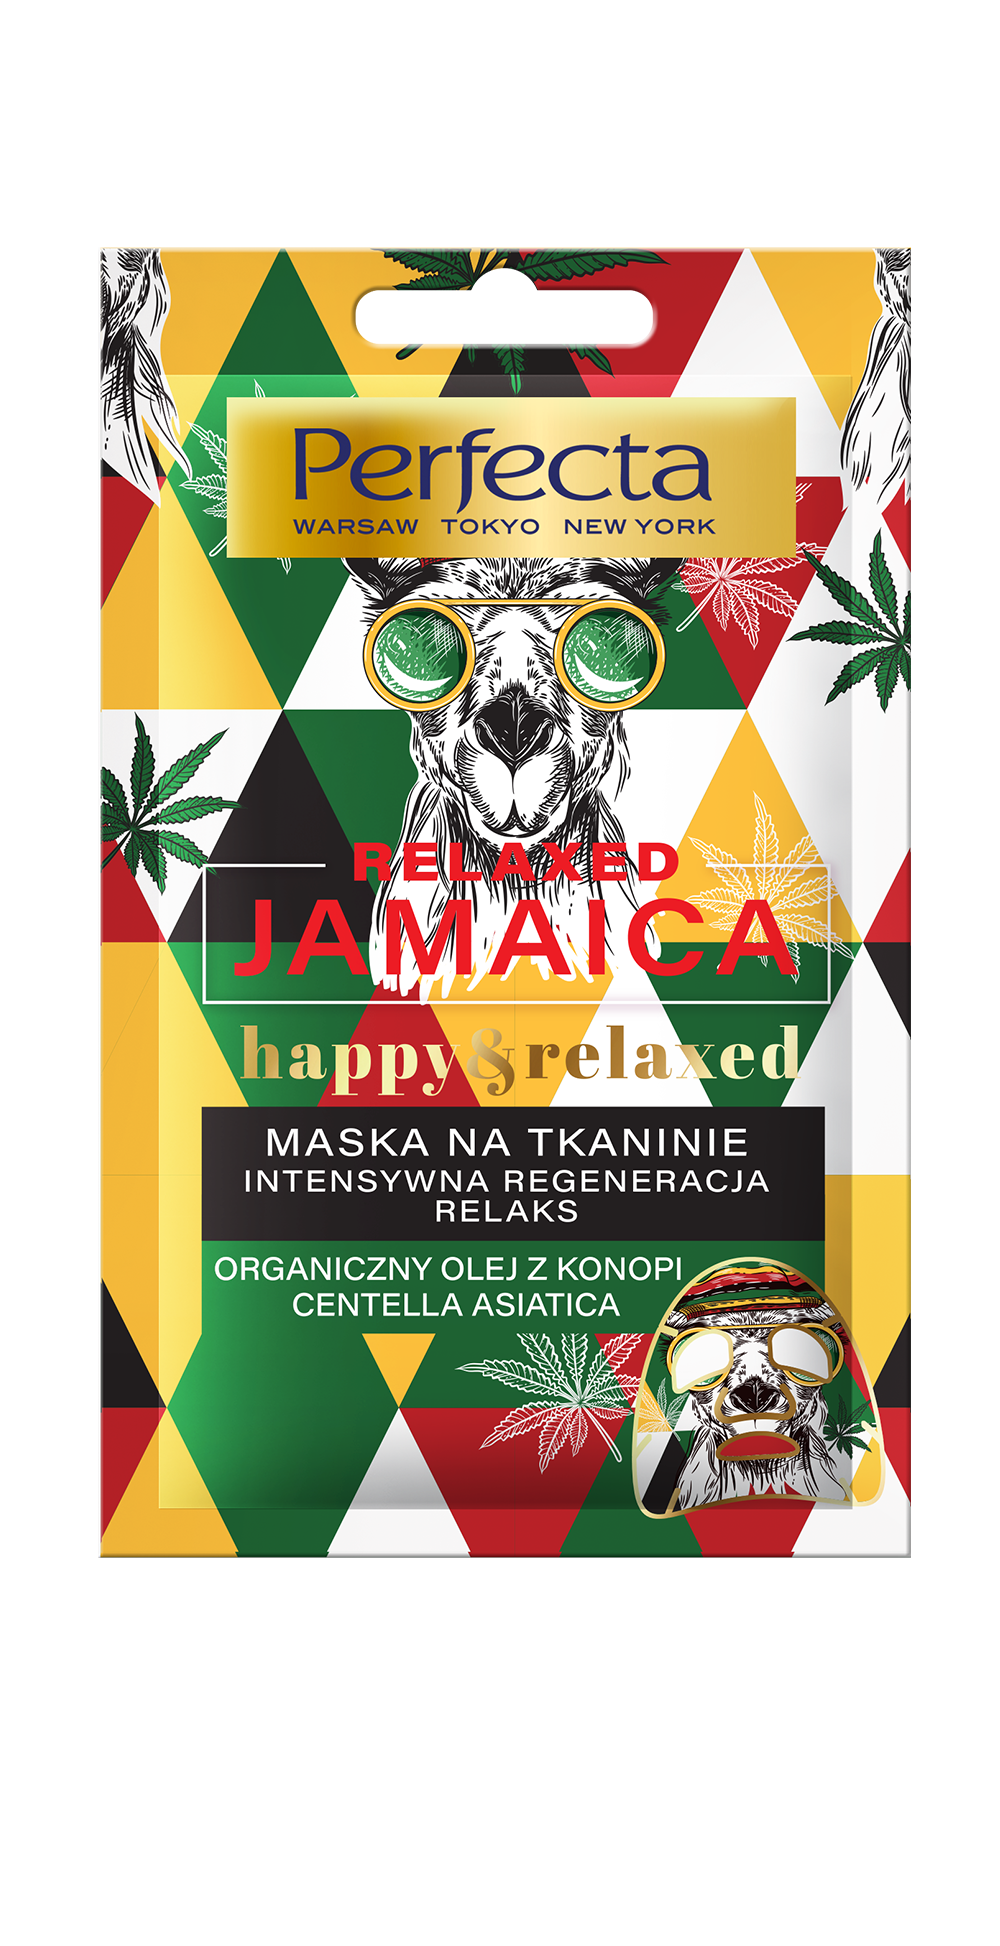 PERFECTA RELAXED JAMAICA HAPPY&RELAXED maska na tkaninie, intensywna regeneracja, relaks, organiczny olej z konopi, centella asiatica